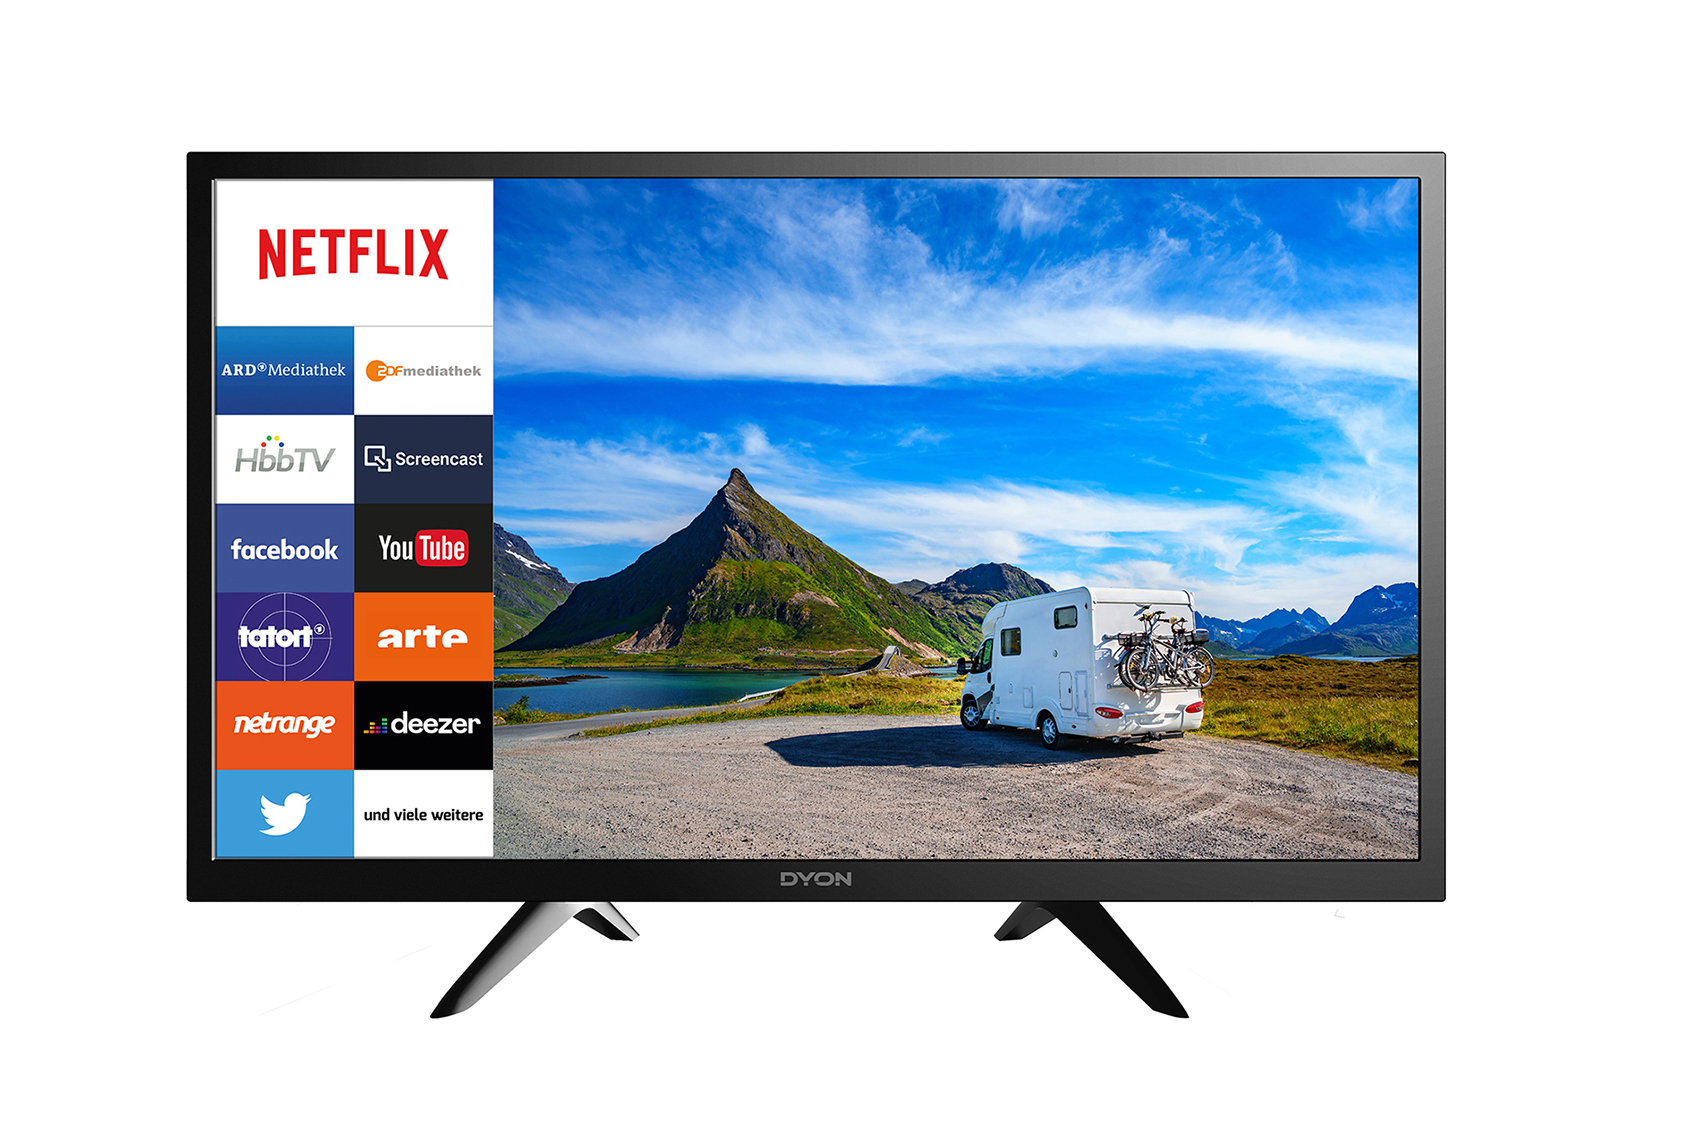 SCHWAIGER -TVSET3- Camping Sat Smart TV vorinstalierten cm, Apps Zoll mit 24 (42 LNB) mit Single Anlage LED